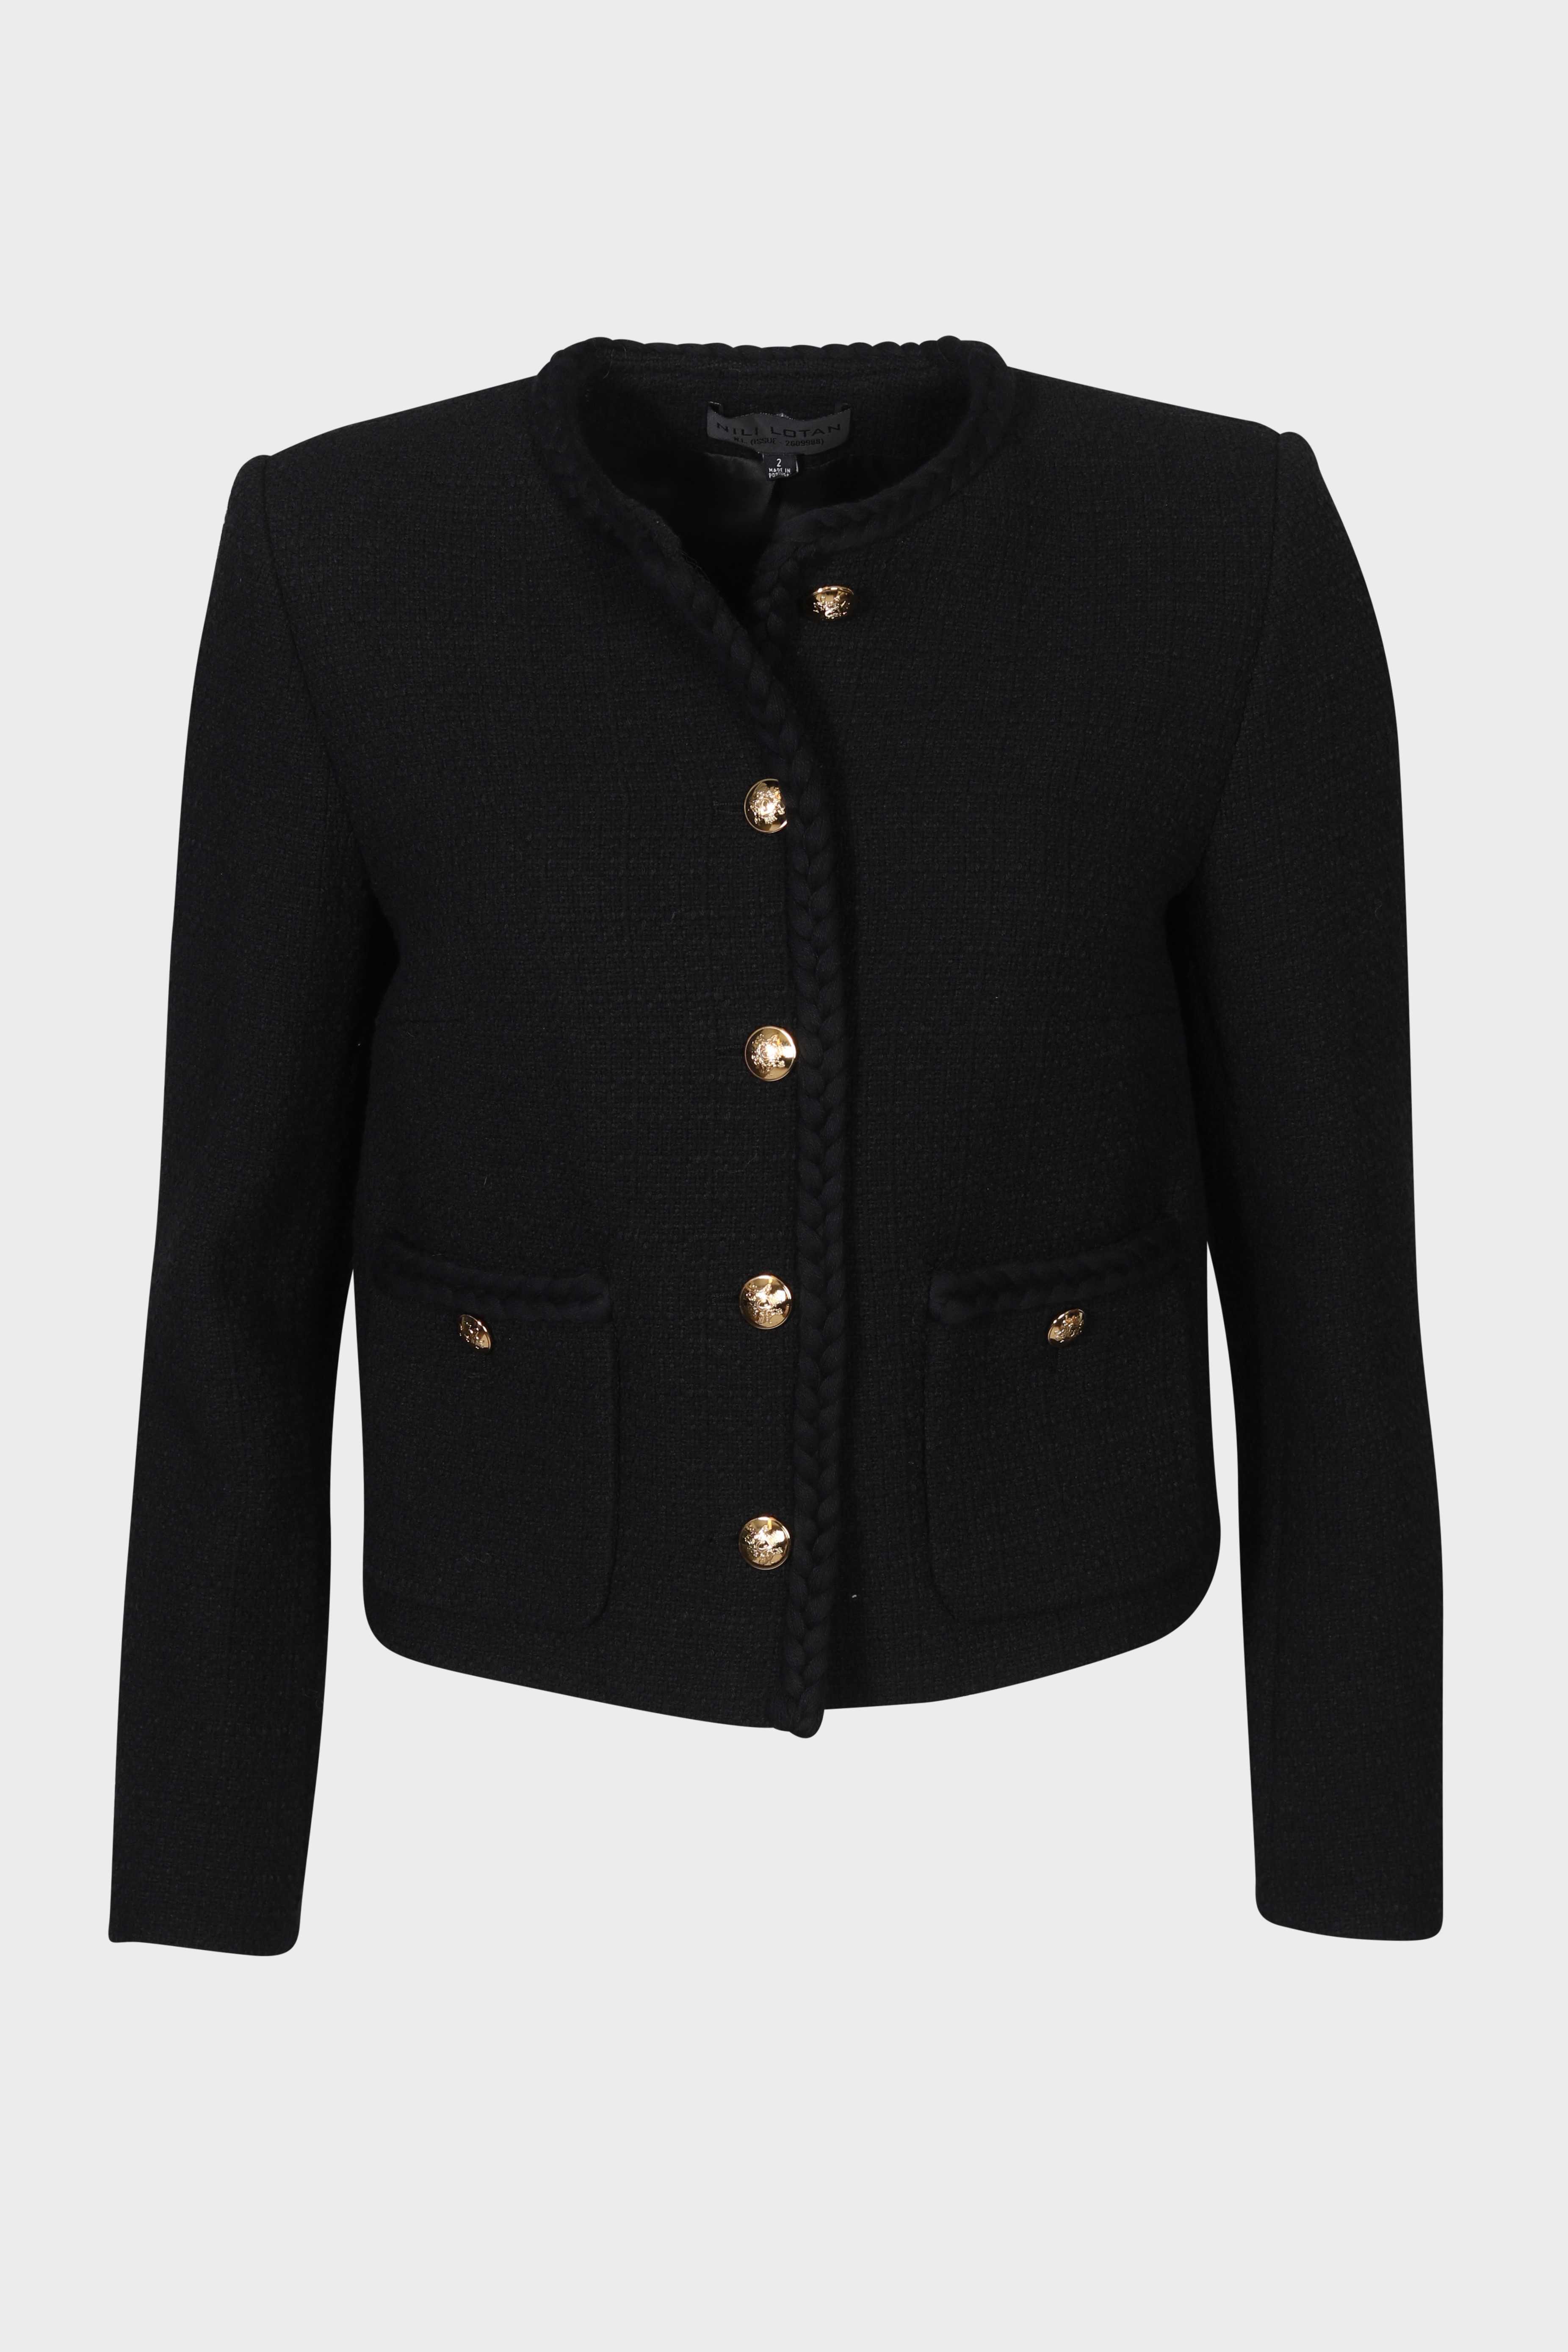 NILI LOTAN Iman Cropped Jacket in Black 8 / XL